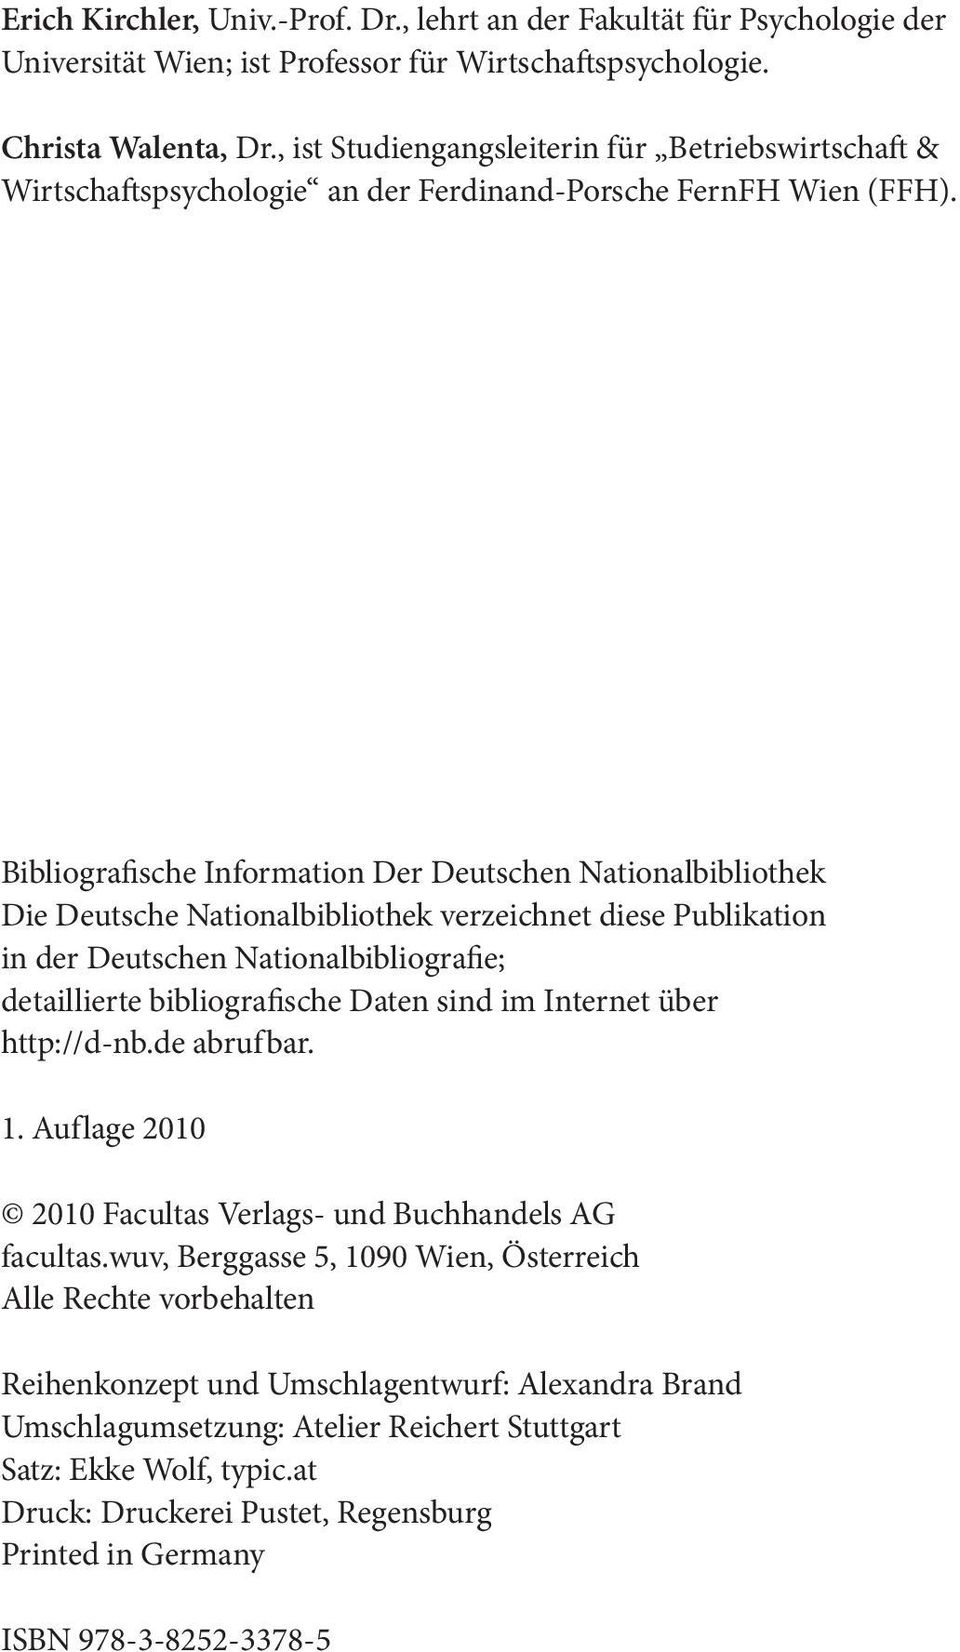 Bibliografische Information Der Deutschen Nationalbibliothek Die Deutsche Nationalbibliothek verzeichnet diese Publikation in der Deutschen Nationalbibliografie; detaillierte bibliografische Daten